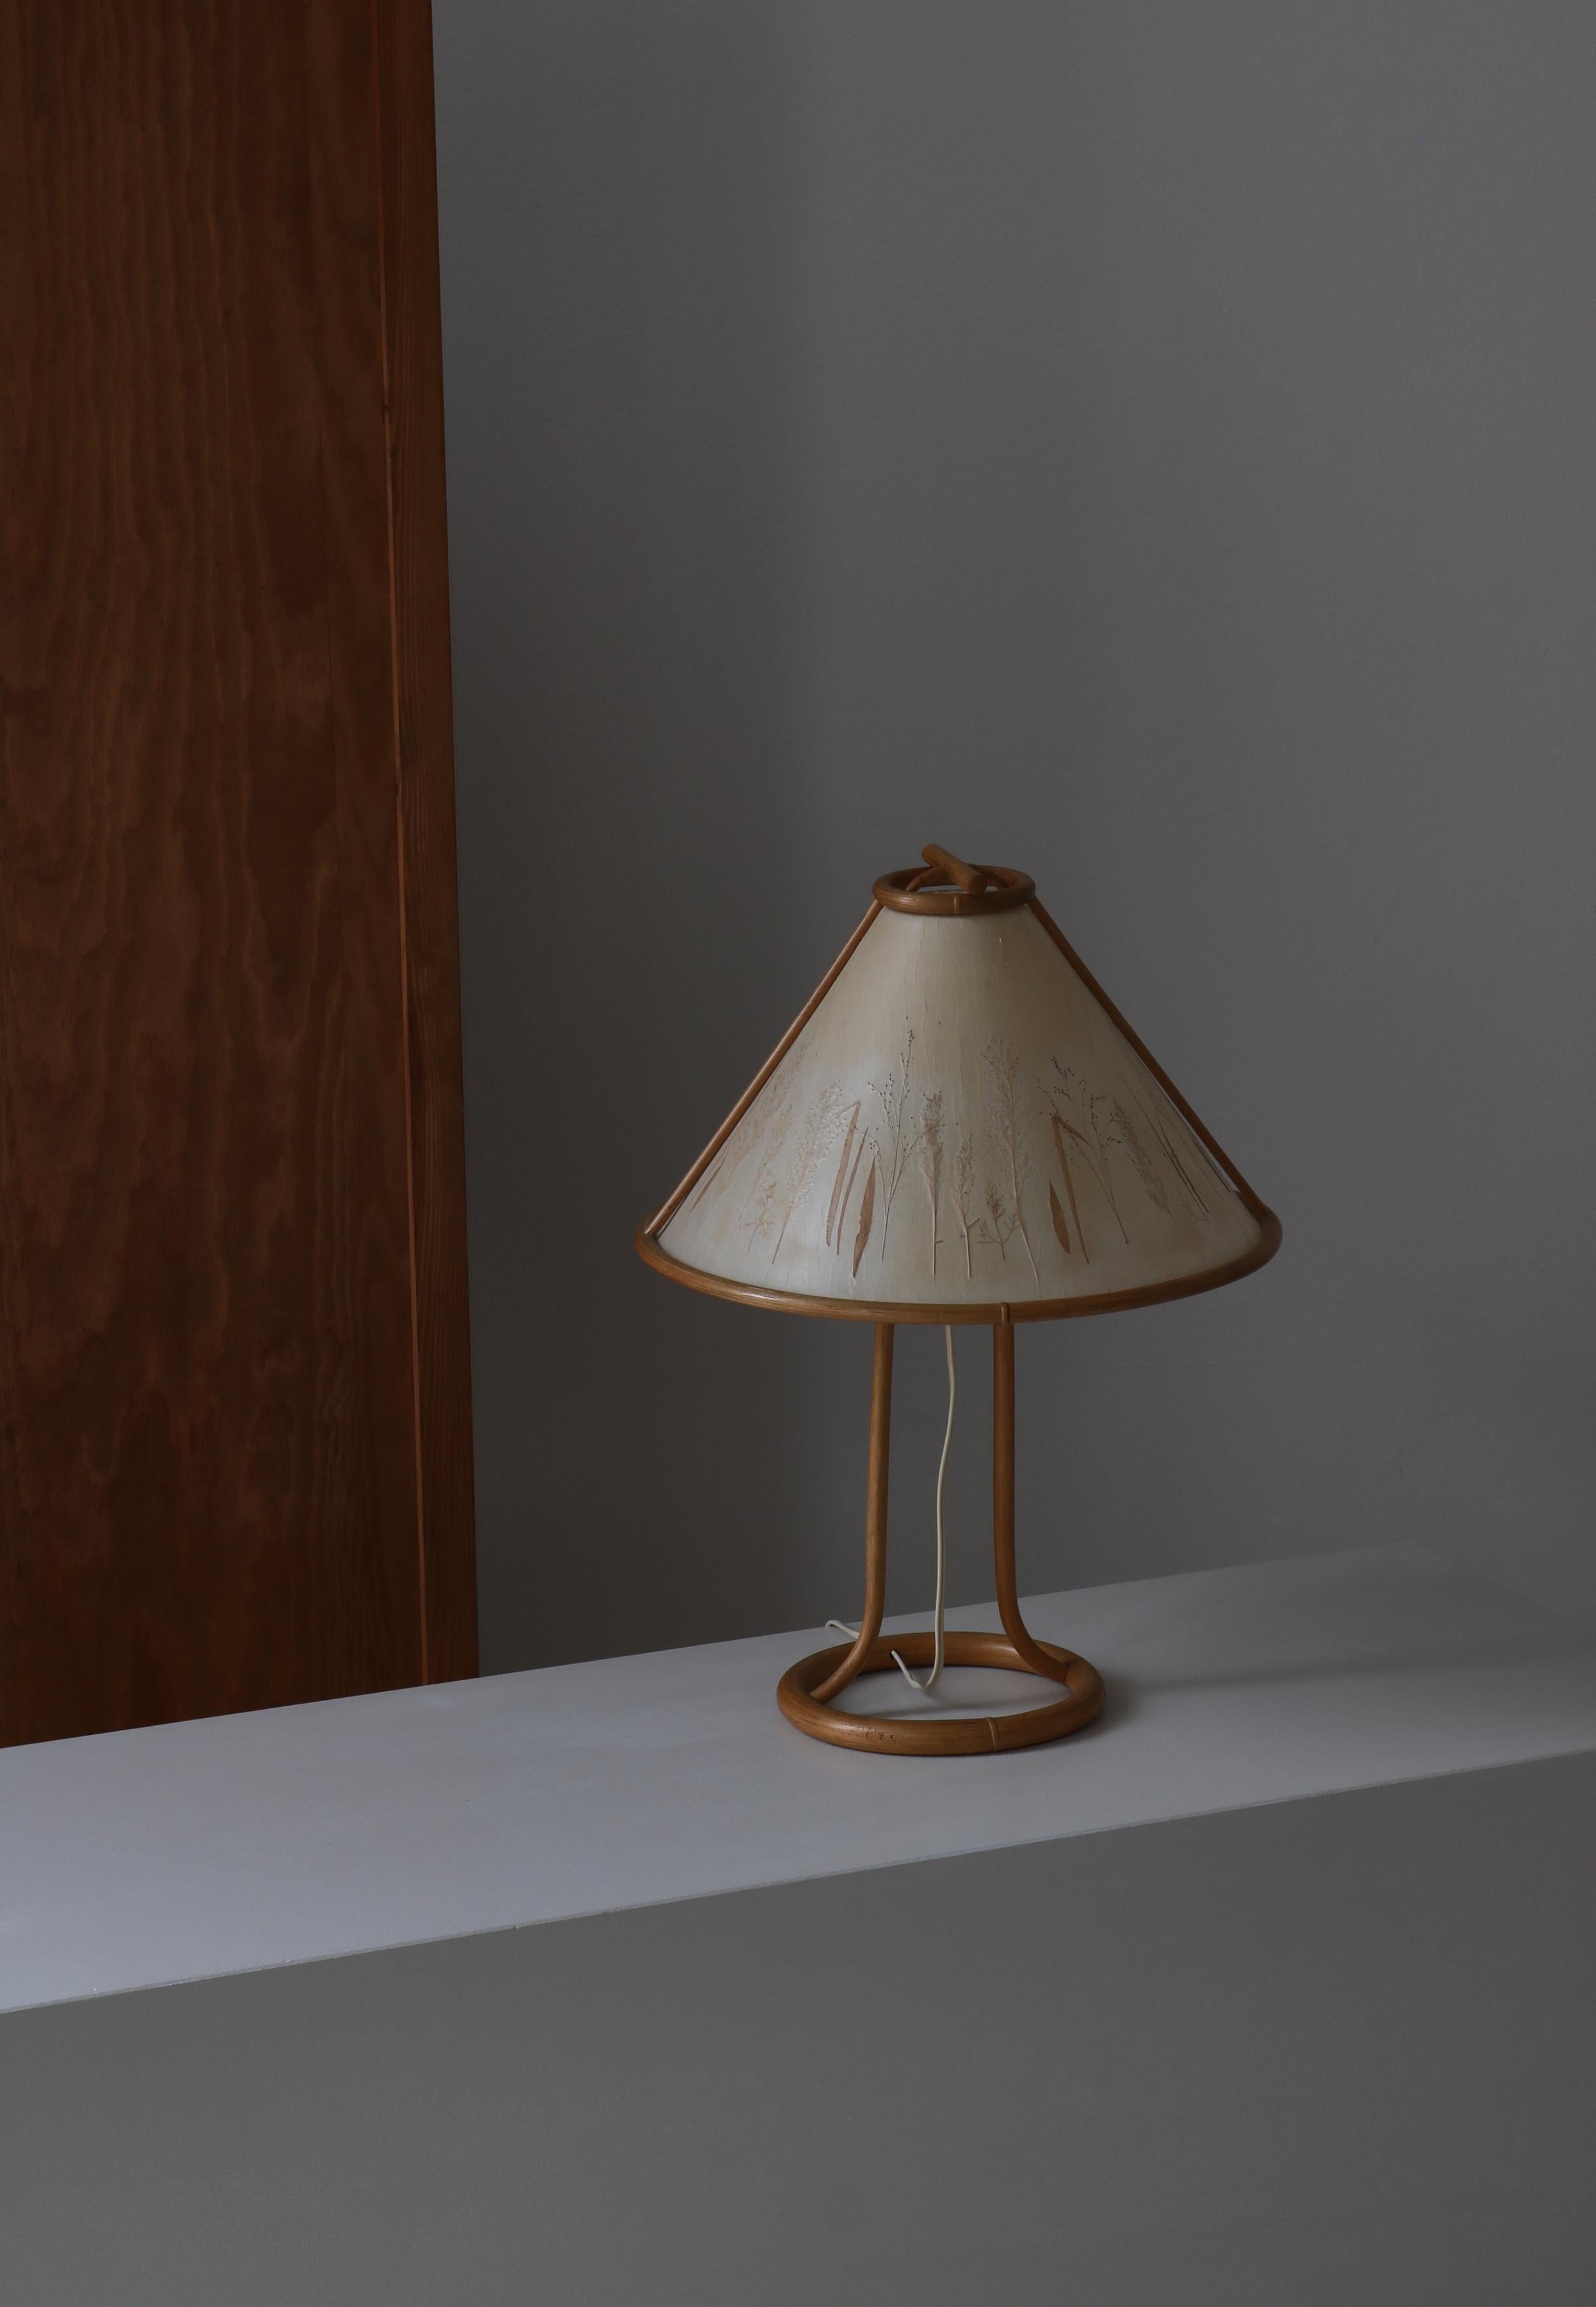 Charmante Vintage-Tischlampe im Wabi-Sabi-Stil, handgefertigt in Dänemark in den 1950er Jahren. Der Sockel ist aus gebogenem Bambus und der handgefertigte Schirm ist mit Pergamyn-Papier überzogen und mit gepressten Pflanzen verziert. Nach dem